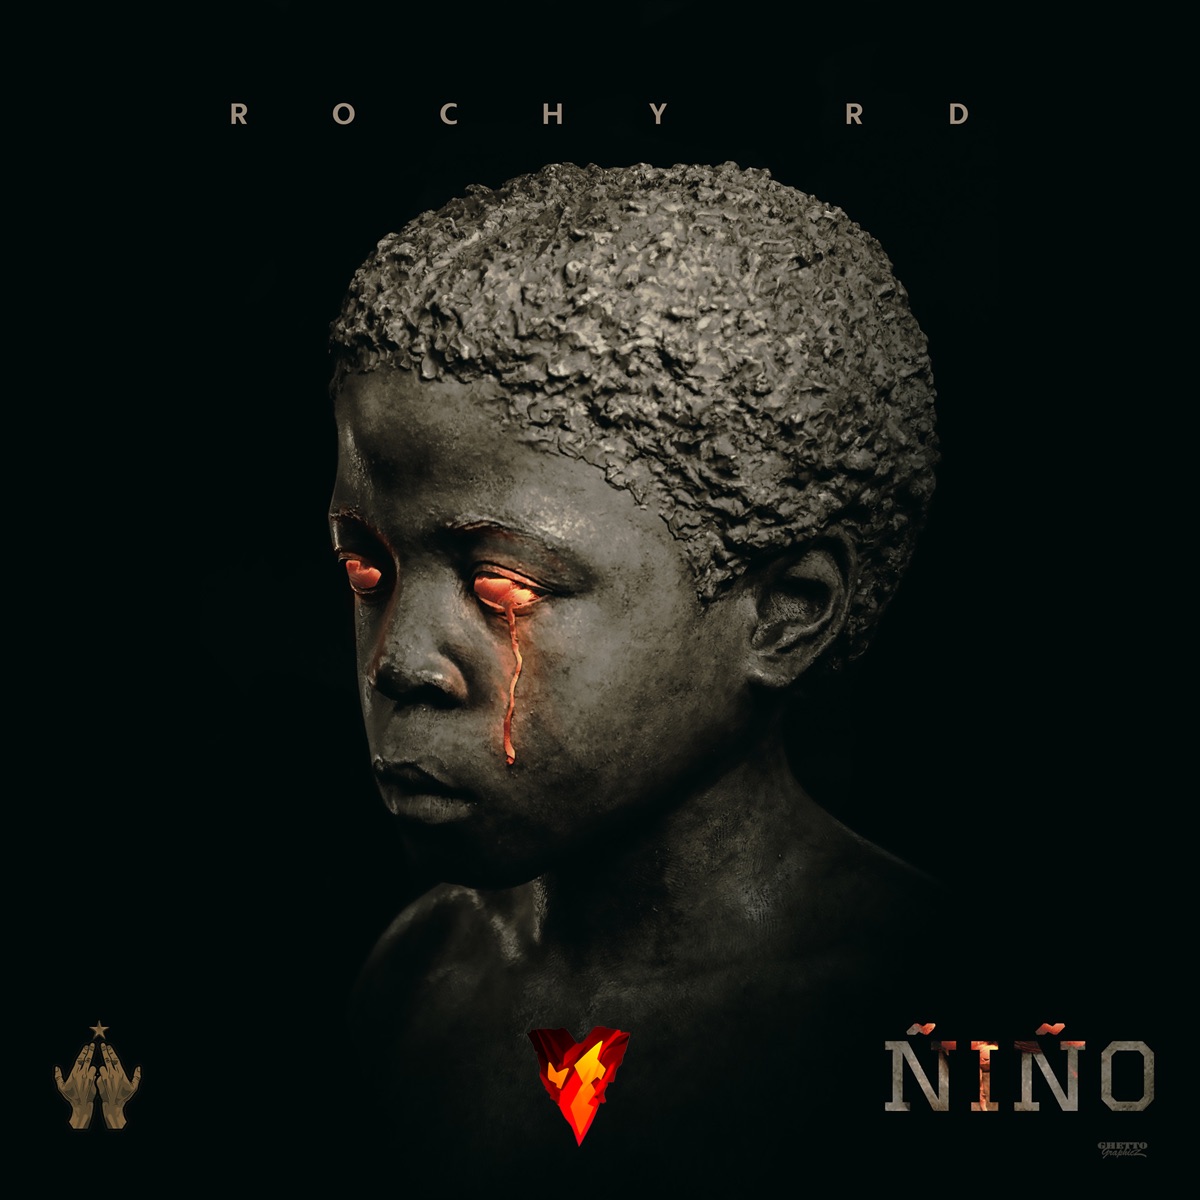 Blindao - Single - Album by Rochy RD & davinci el calenton - Apple Music